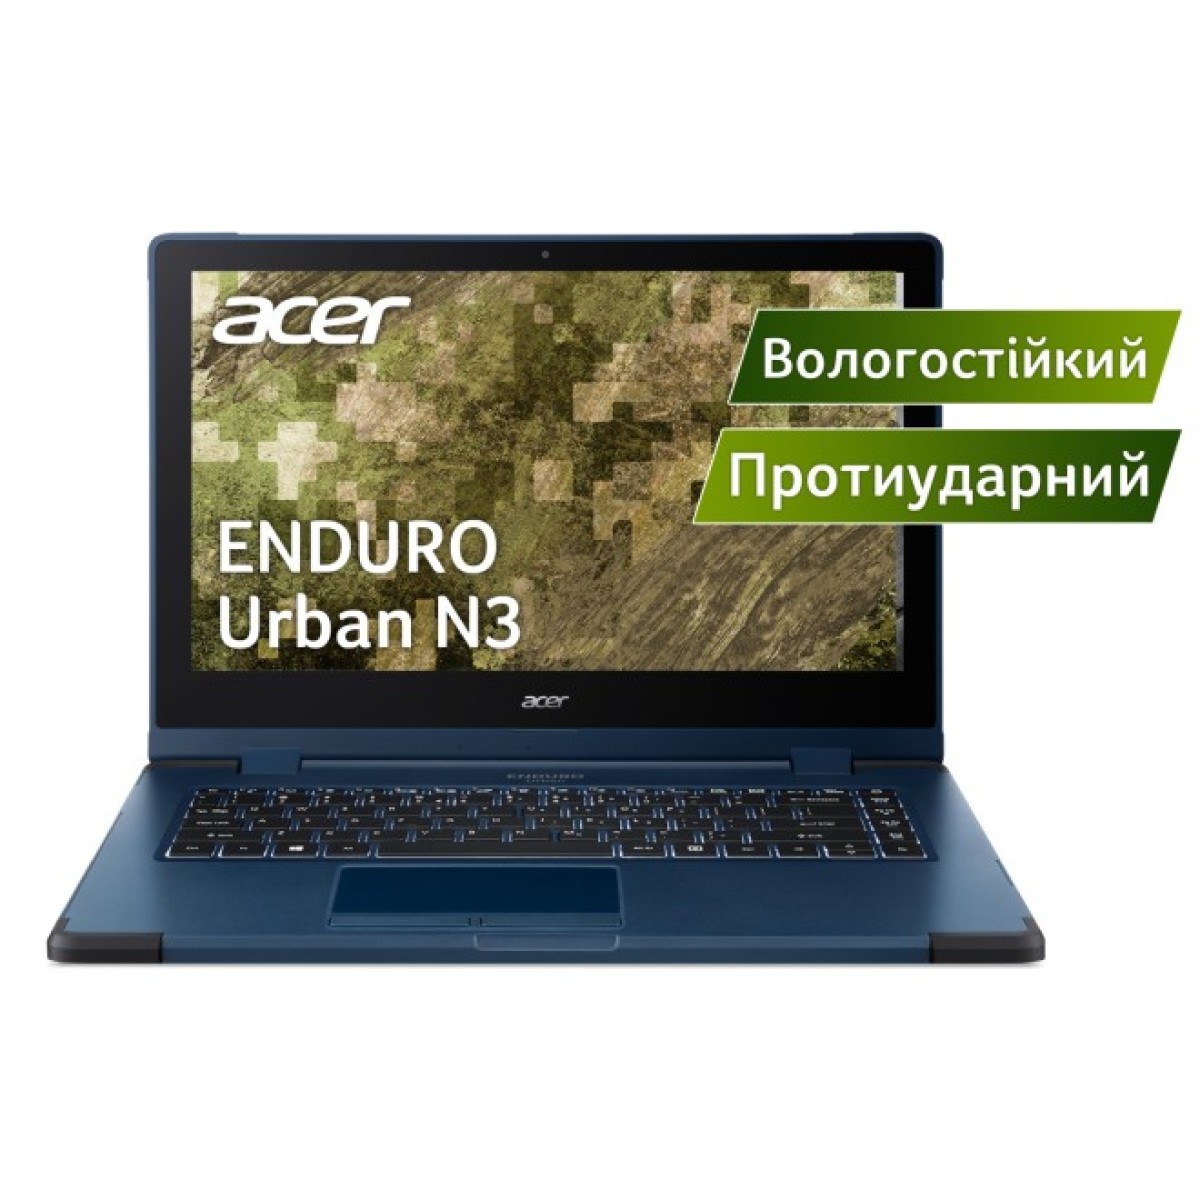 Ноутбук Acer Enduro Urban N3 314A-51W-36BC (NR.R1GEU.00C) 256_256.jpg